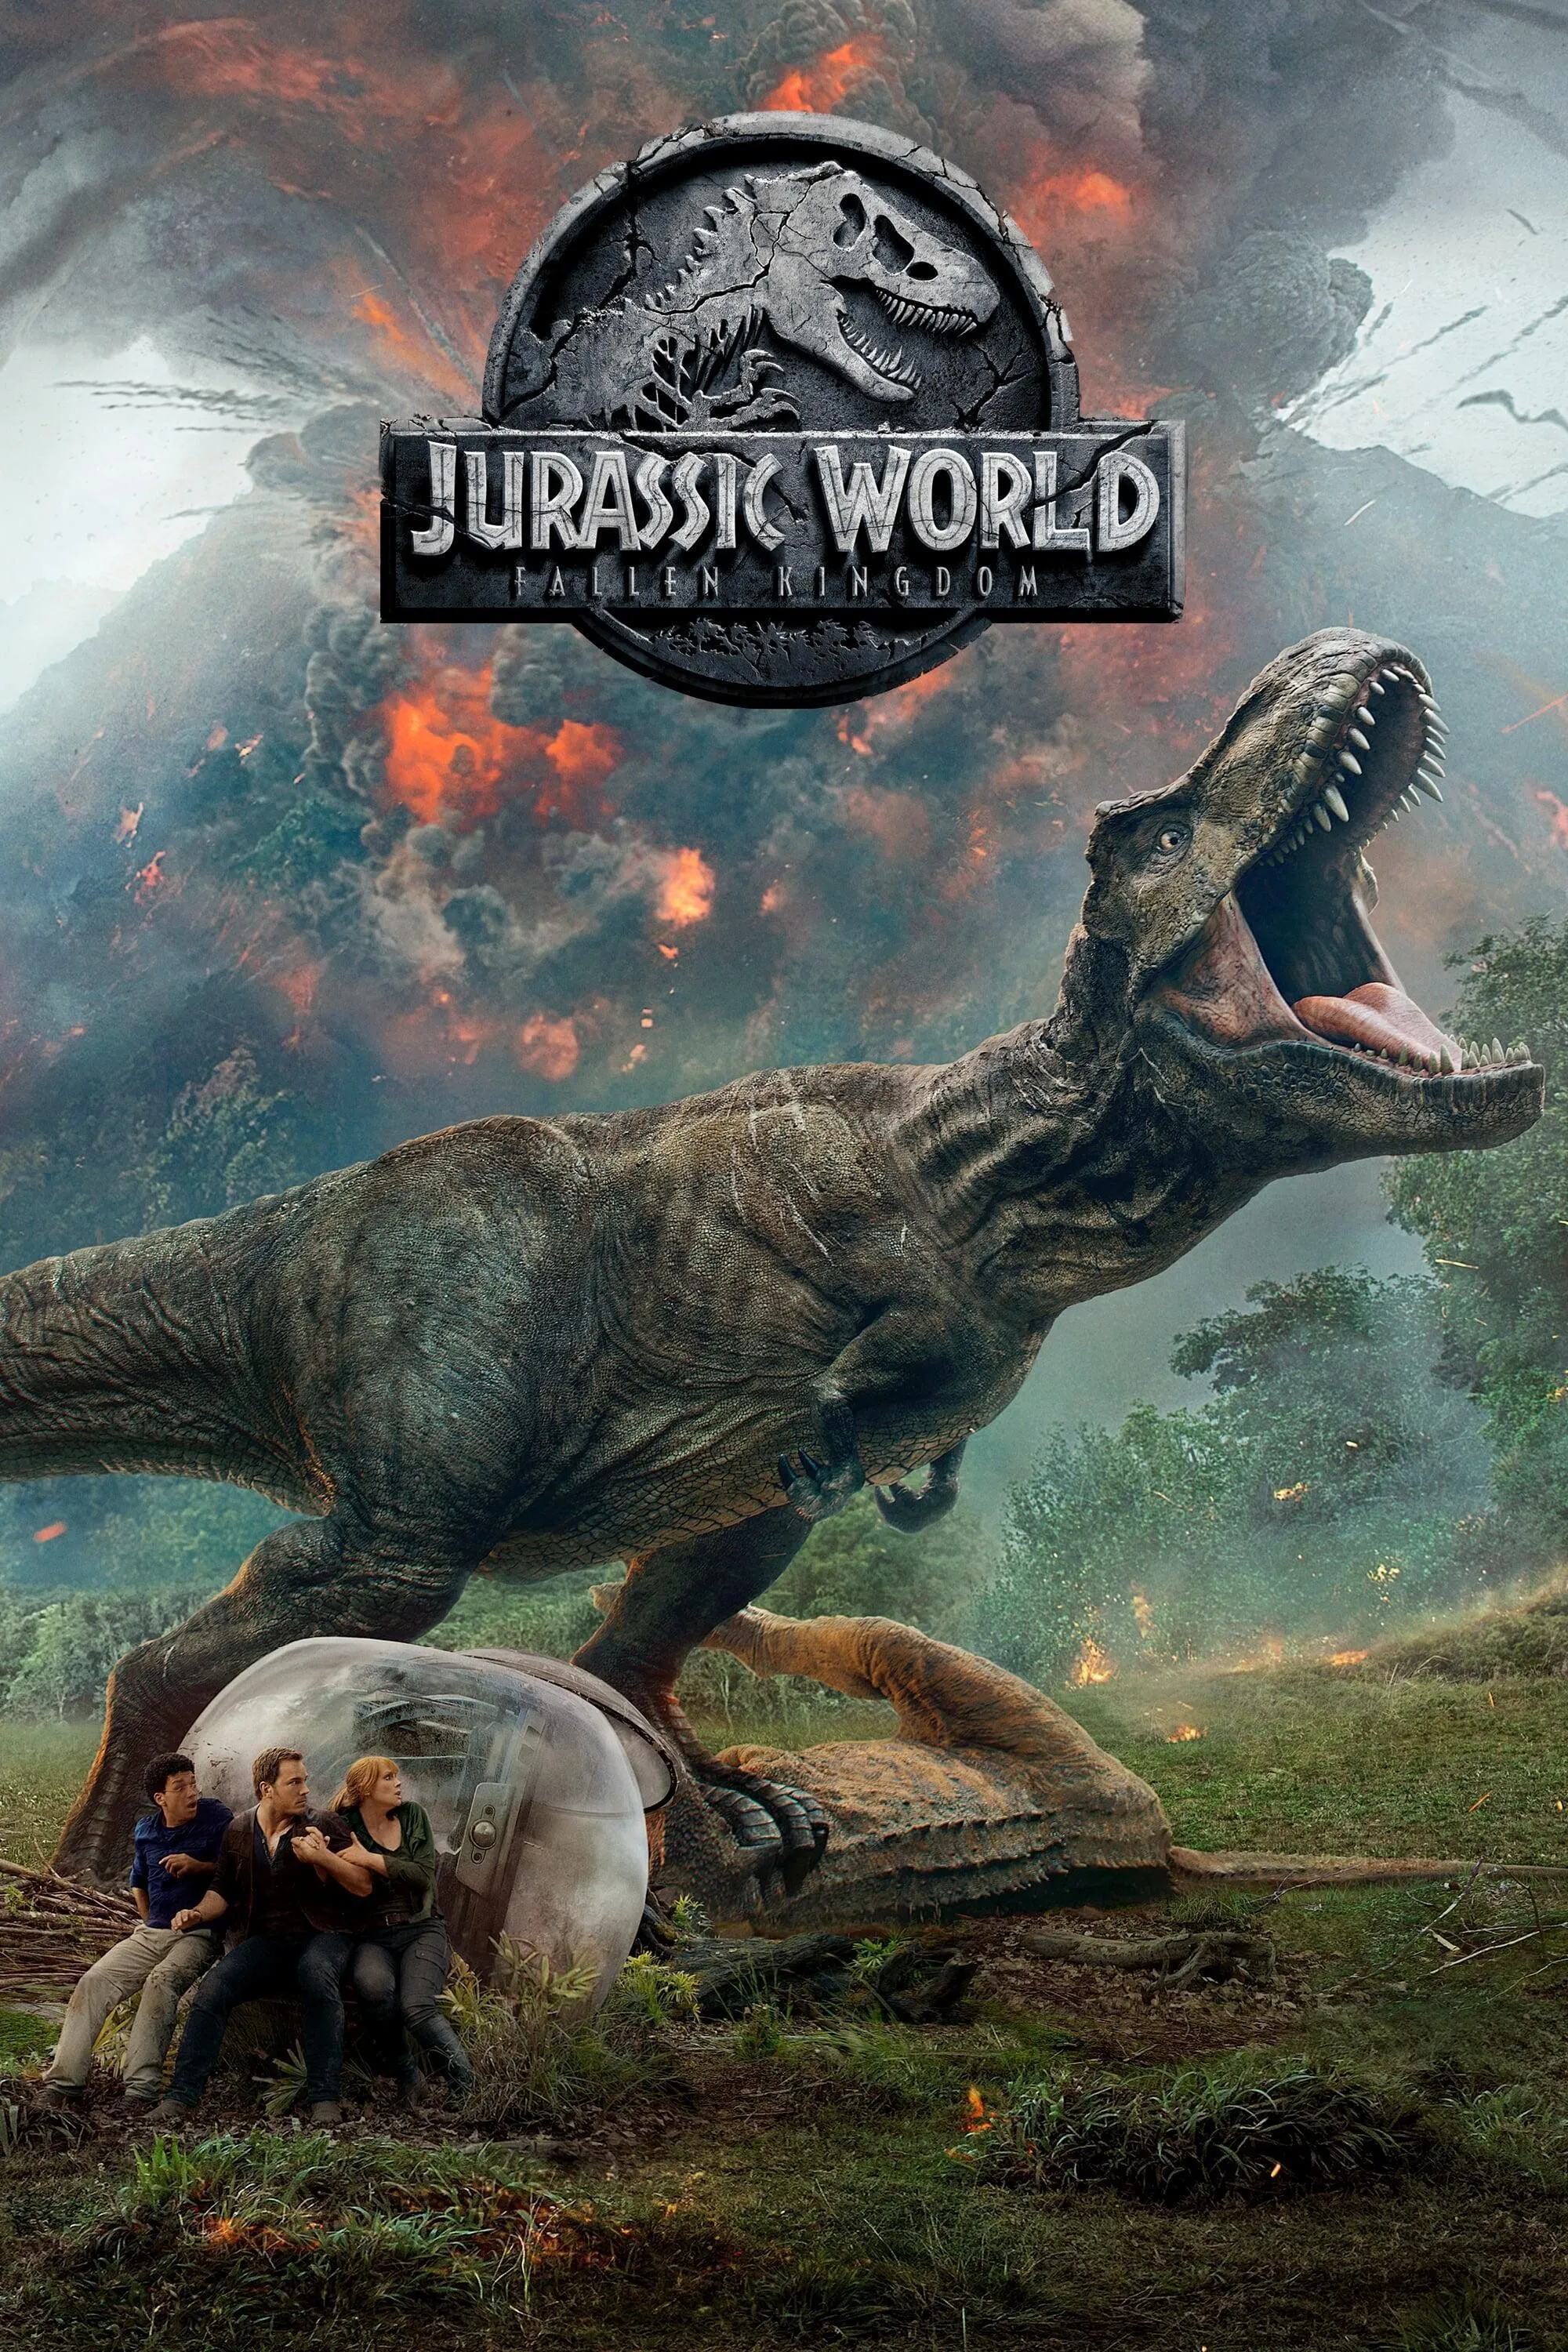 Jurassic World: Fallen Kingdom (2018) Movie Information & Trailers